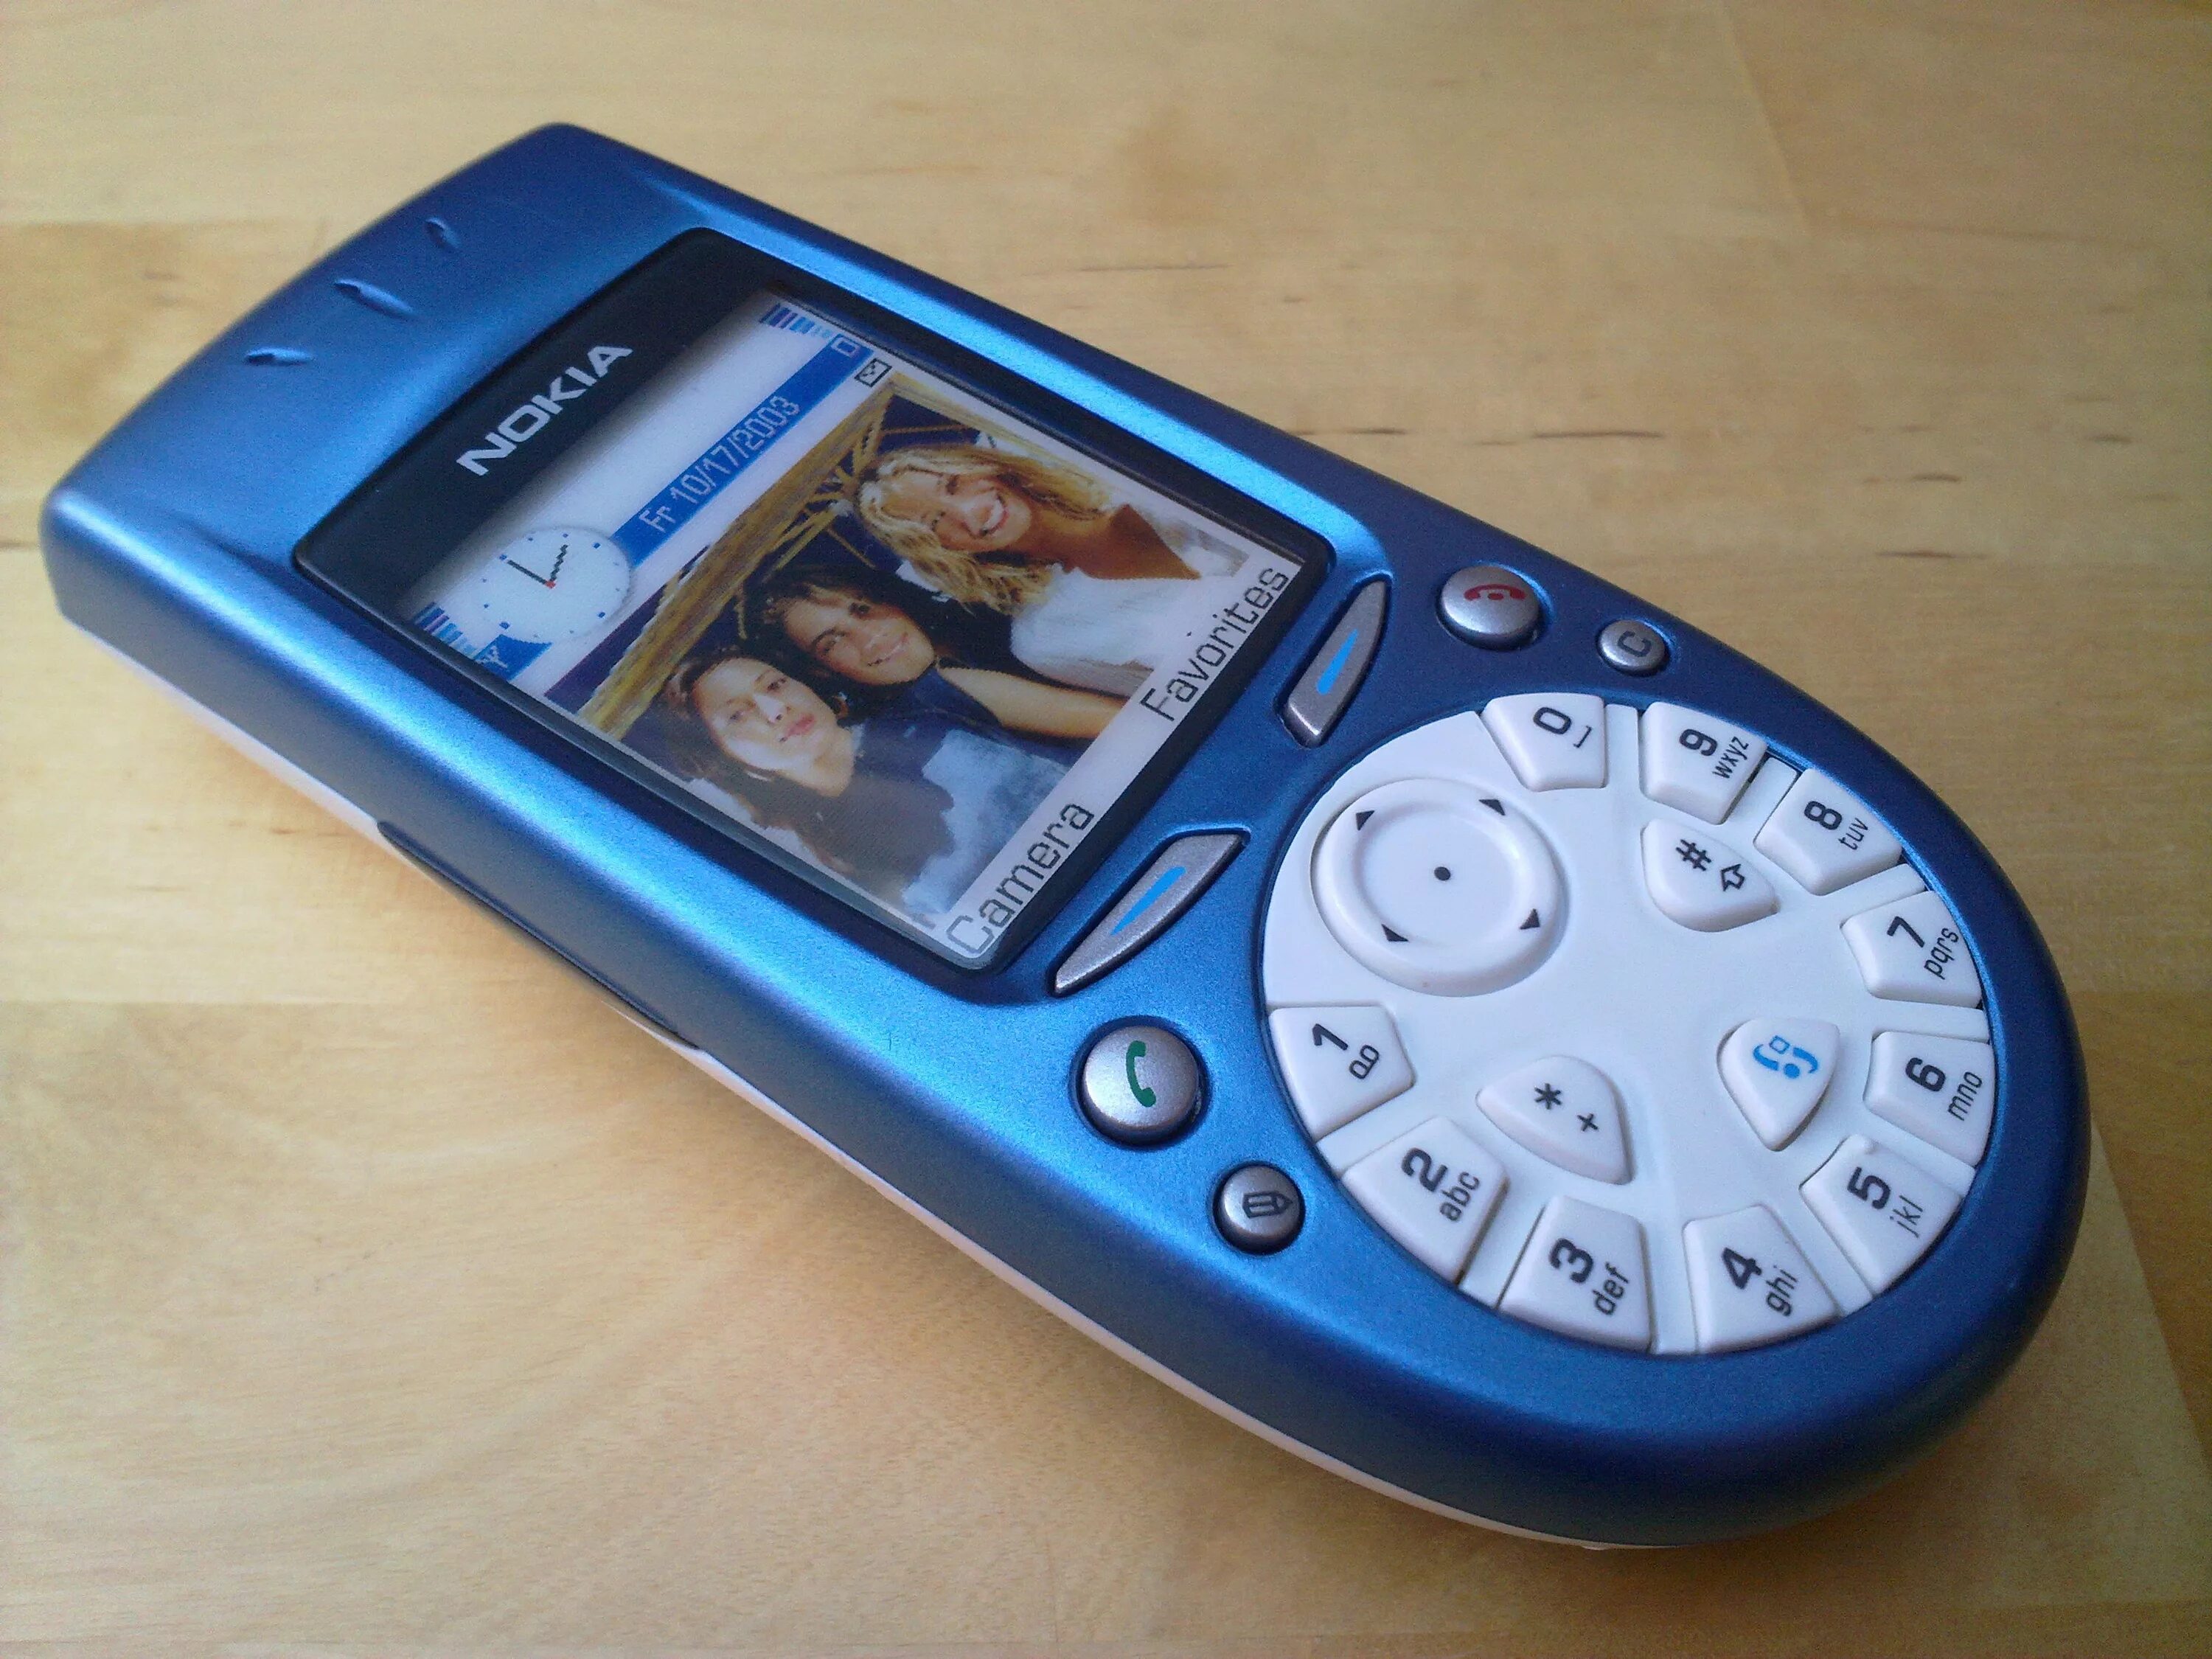 Старые новые мобильные телефон. Nokia 3650. Смартфон Nokia 3650. Нокиа с камерой 3650. Коммуникатор нокия 2003.